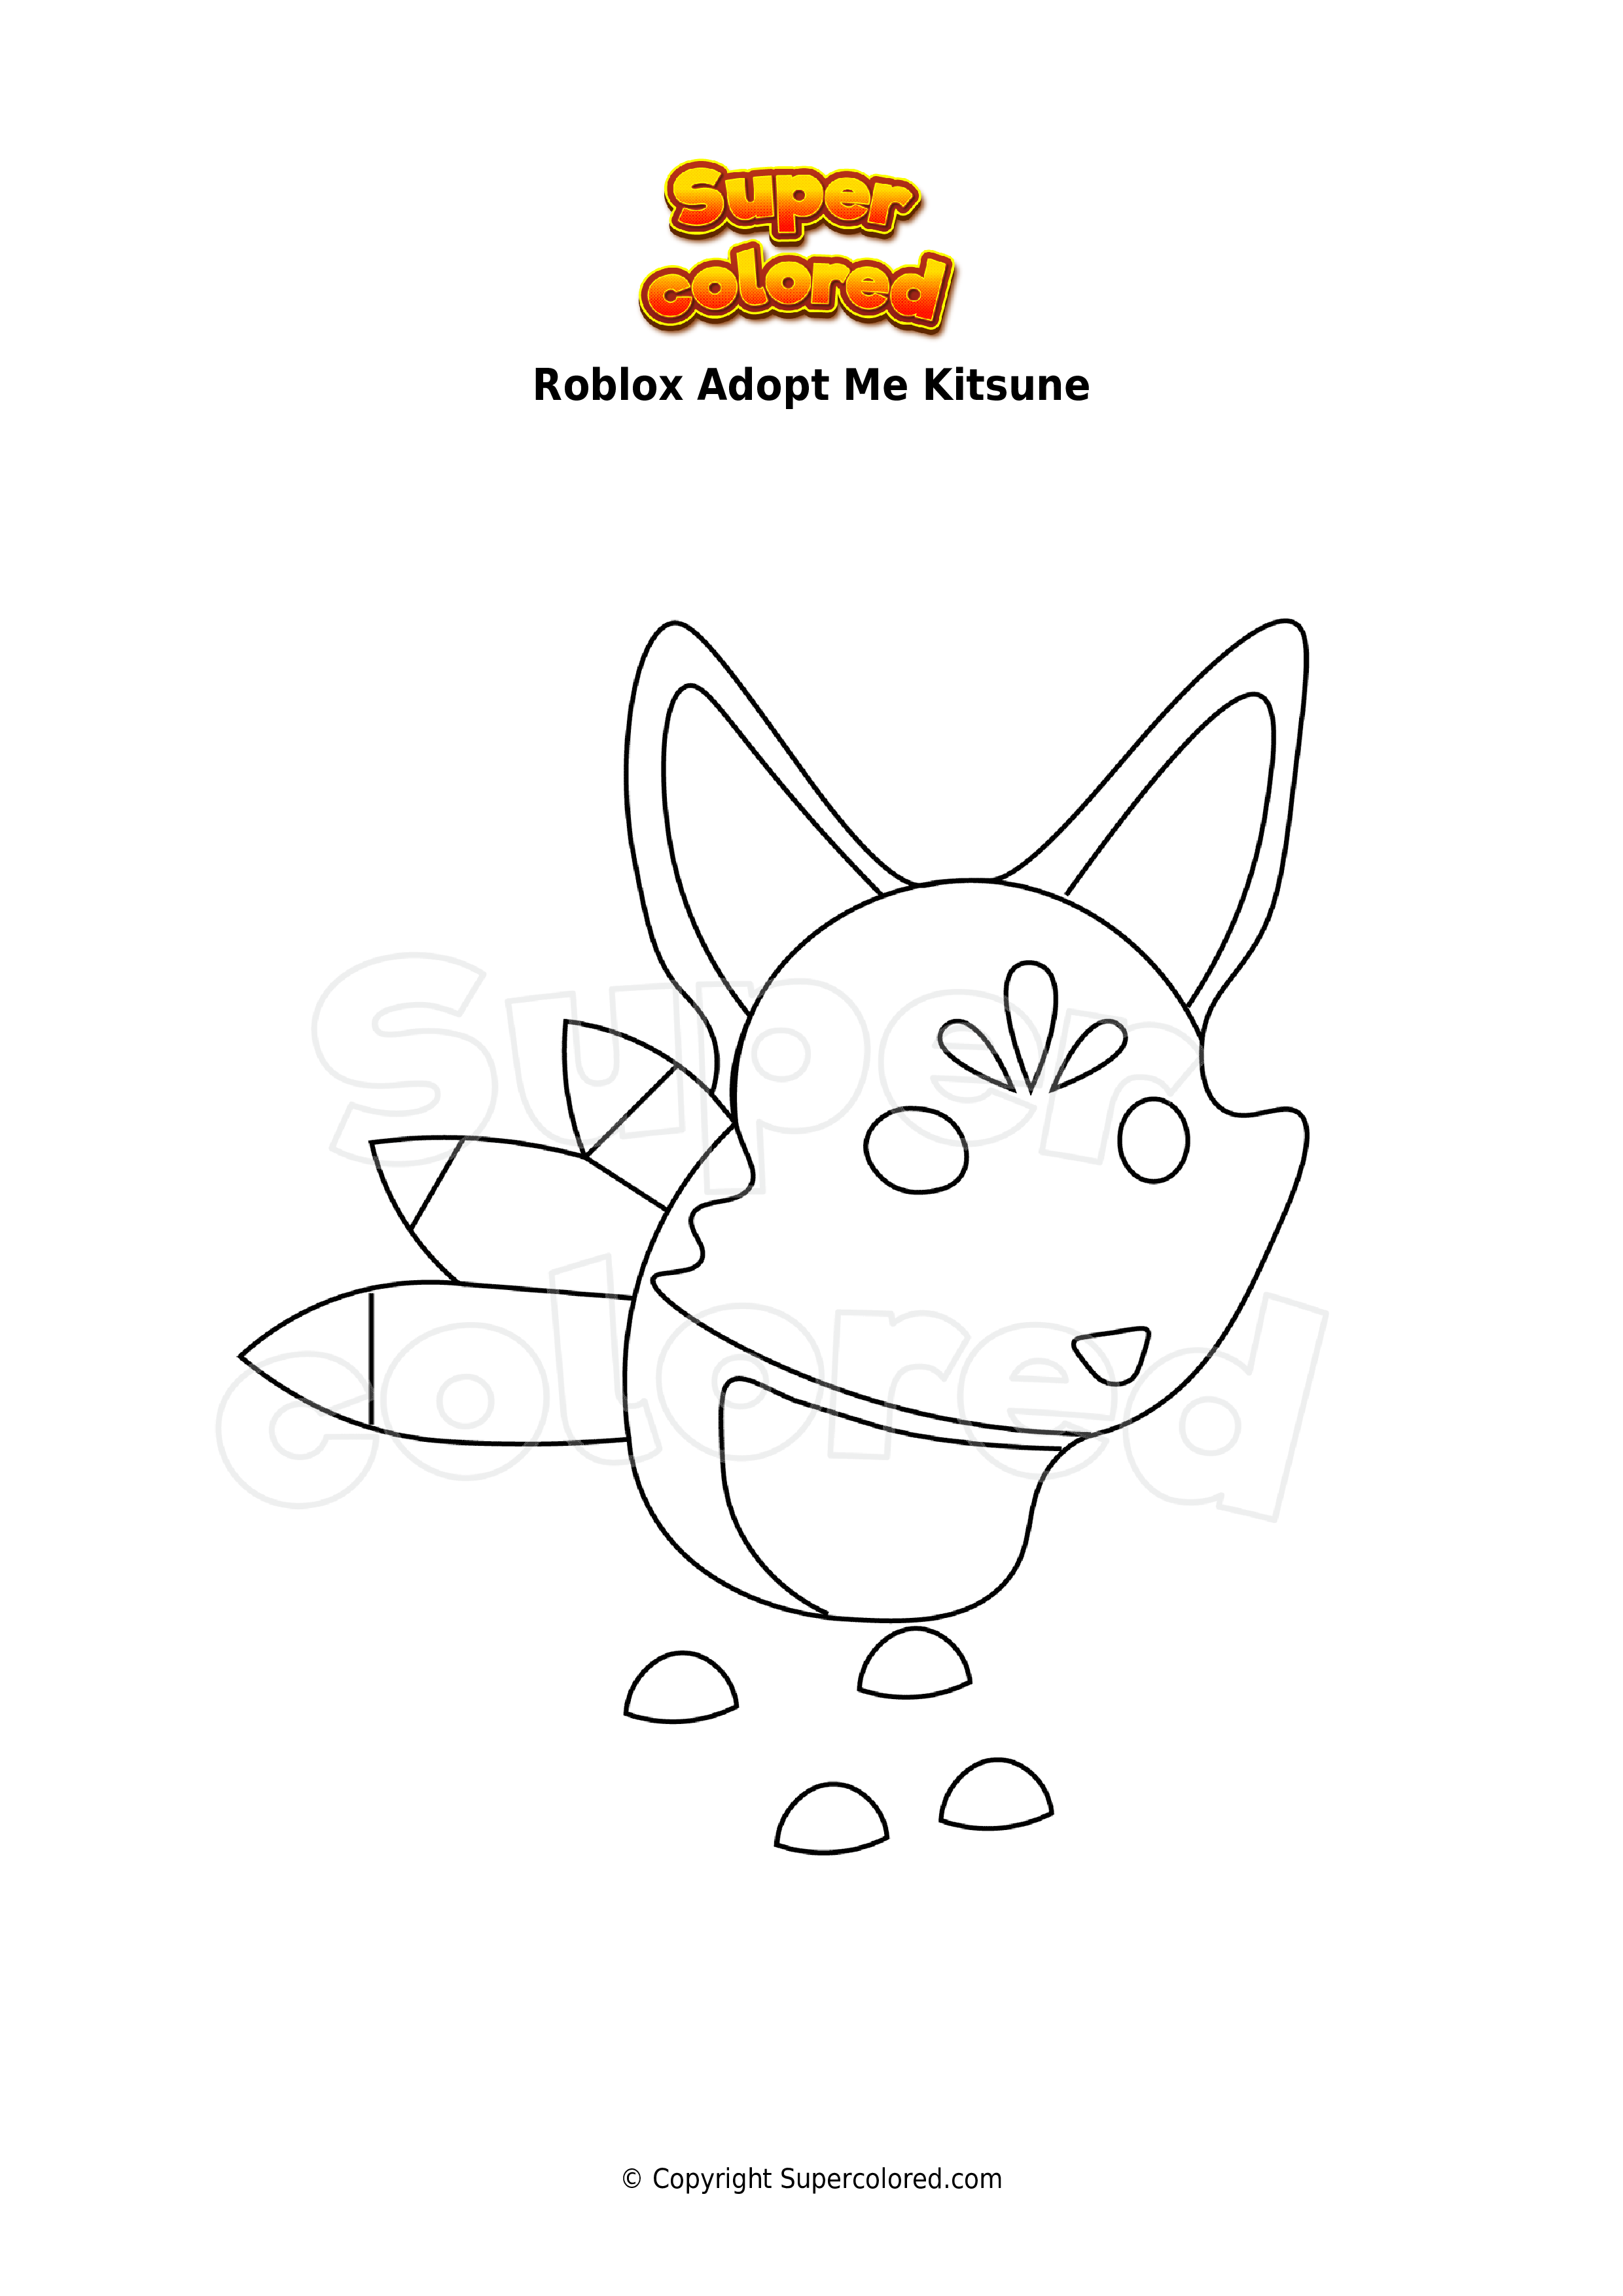 Coloring page Roblox Adopt Me Kitsune   Supercolored.com